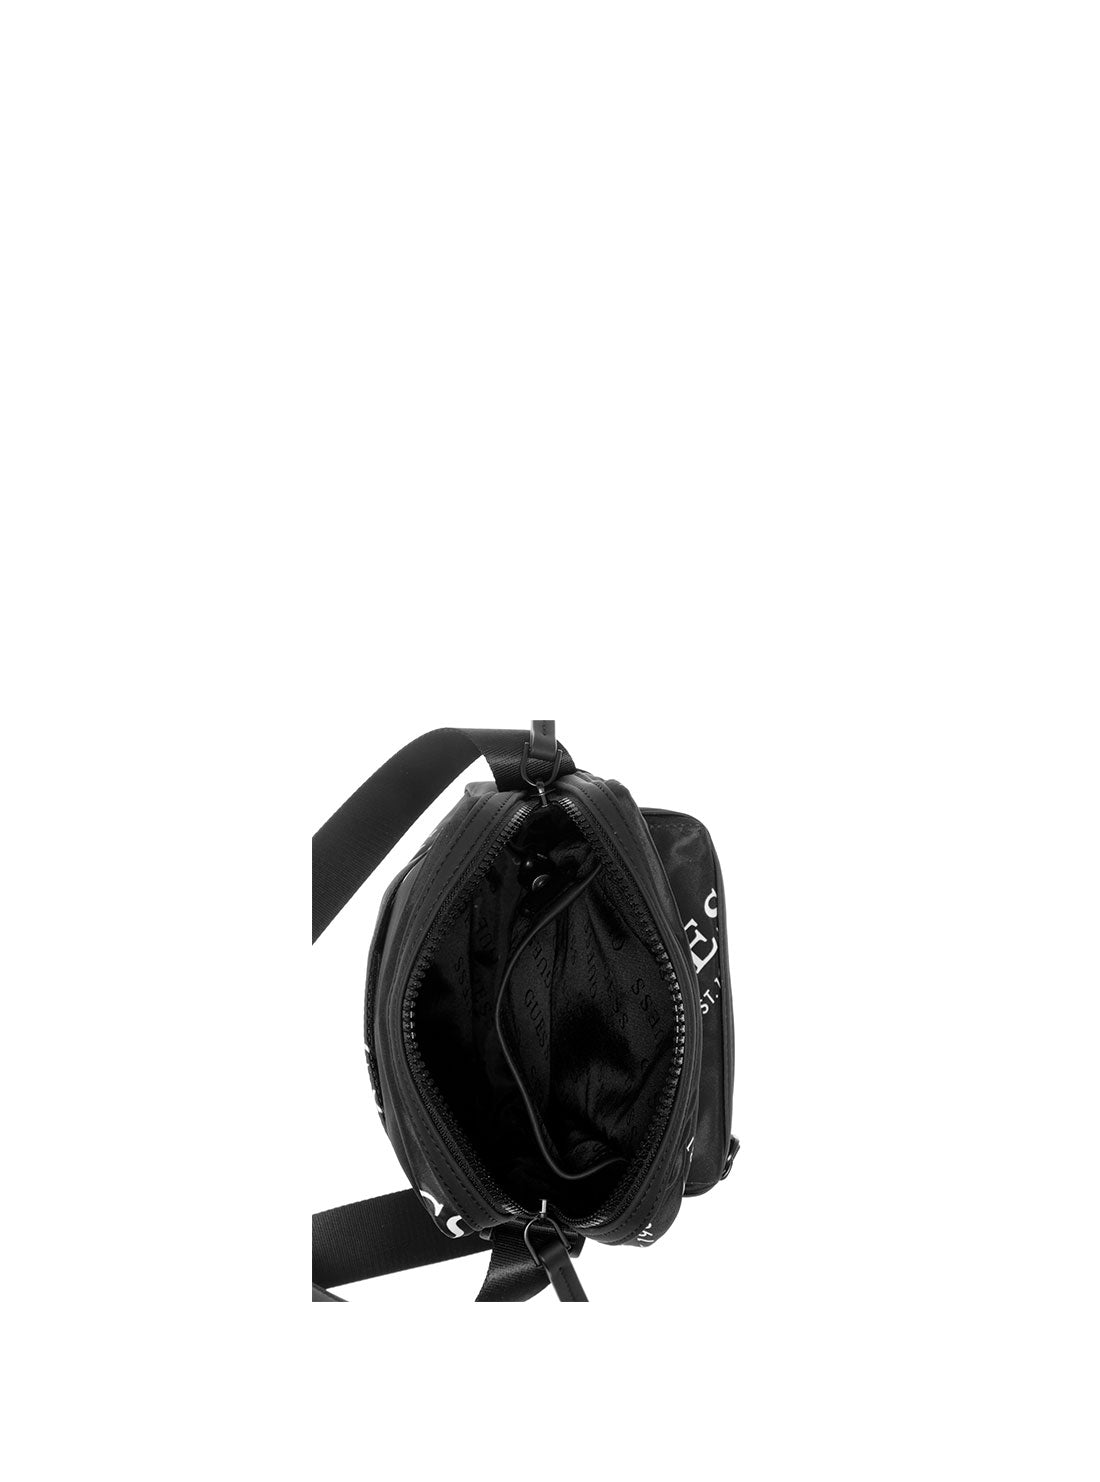 GUESS Men's Black Originals Logo Camera Bag TL703191 Inside View